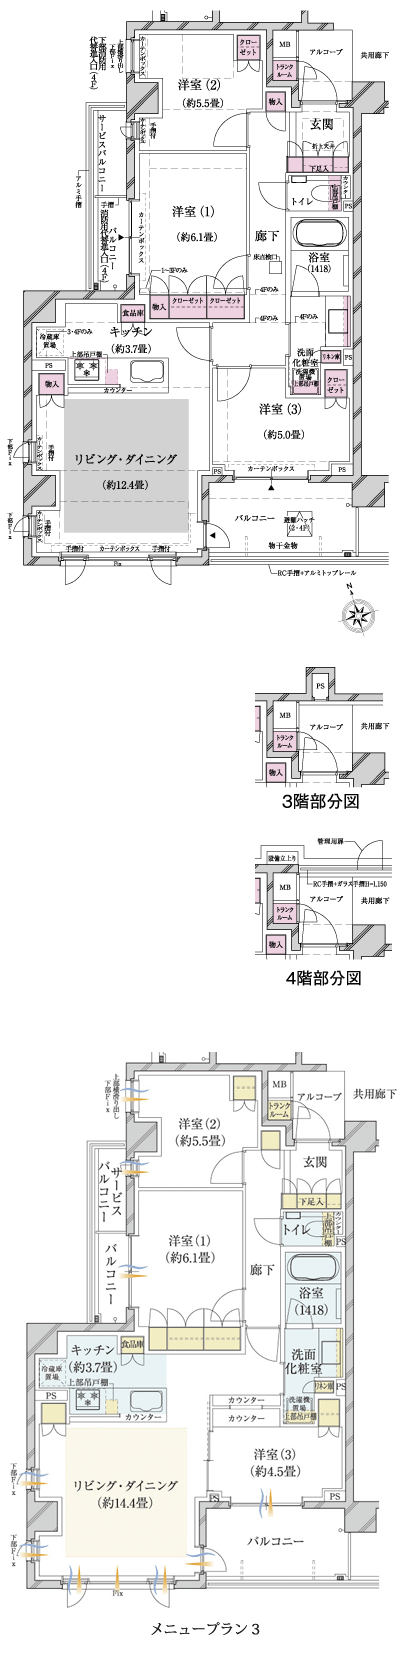 Floor: 3LDK, occupied area: 76.84 sq m